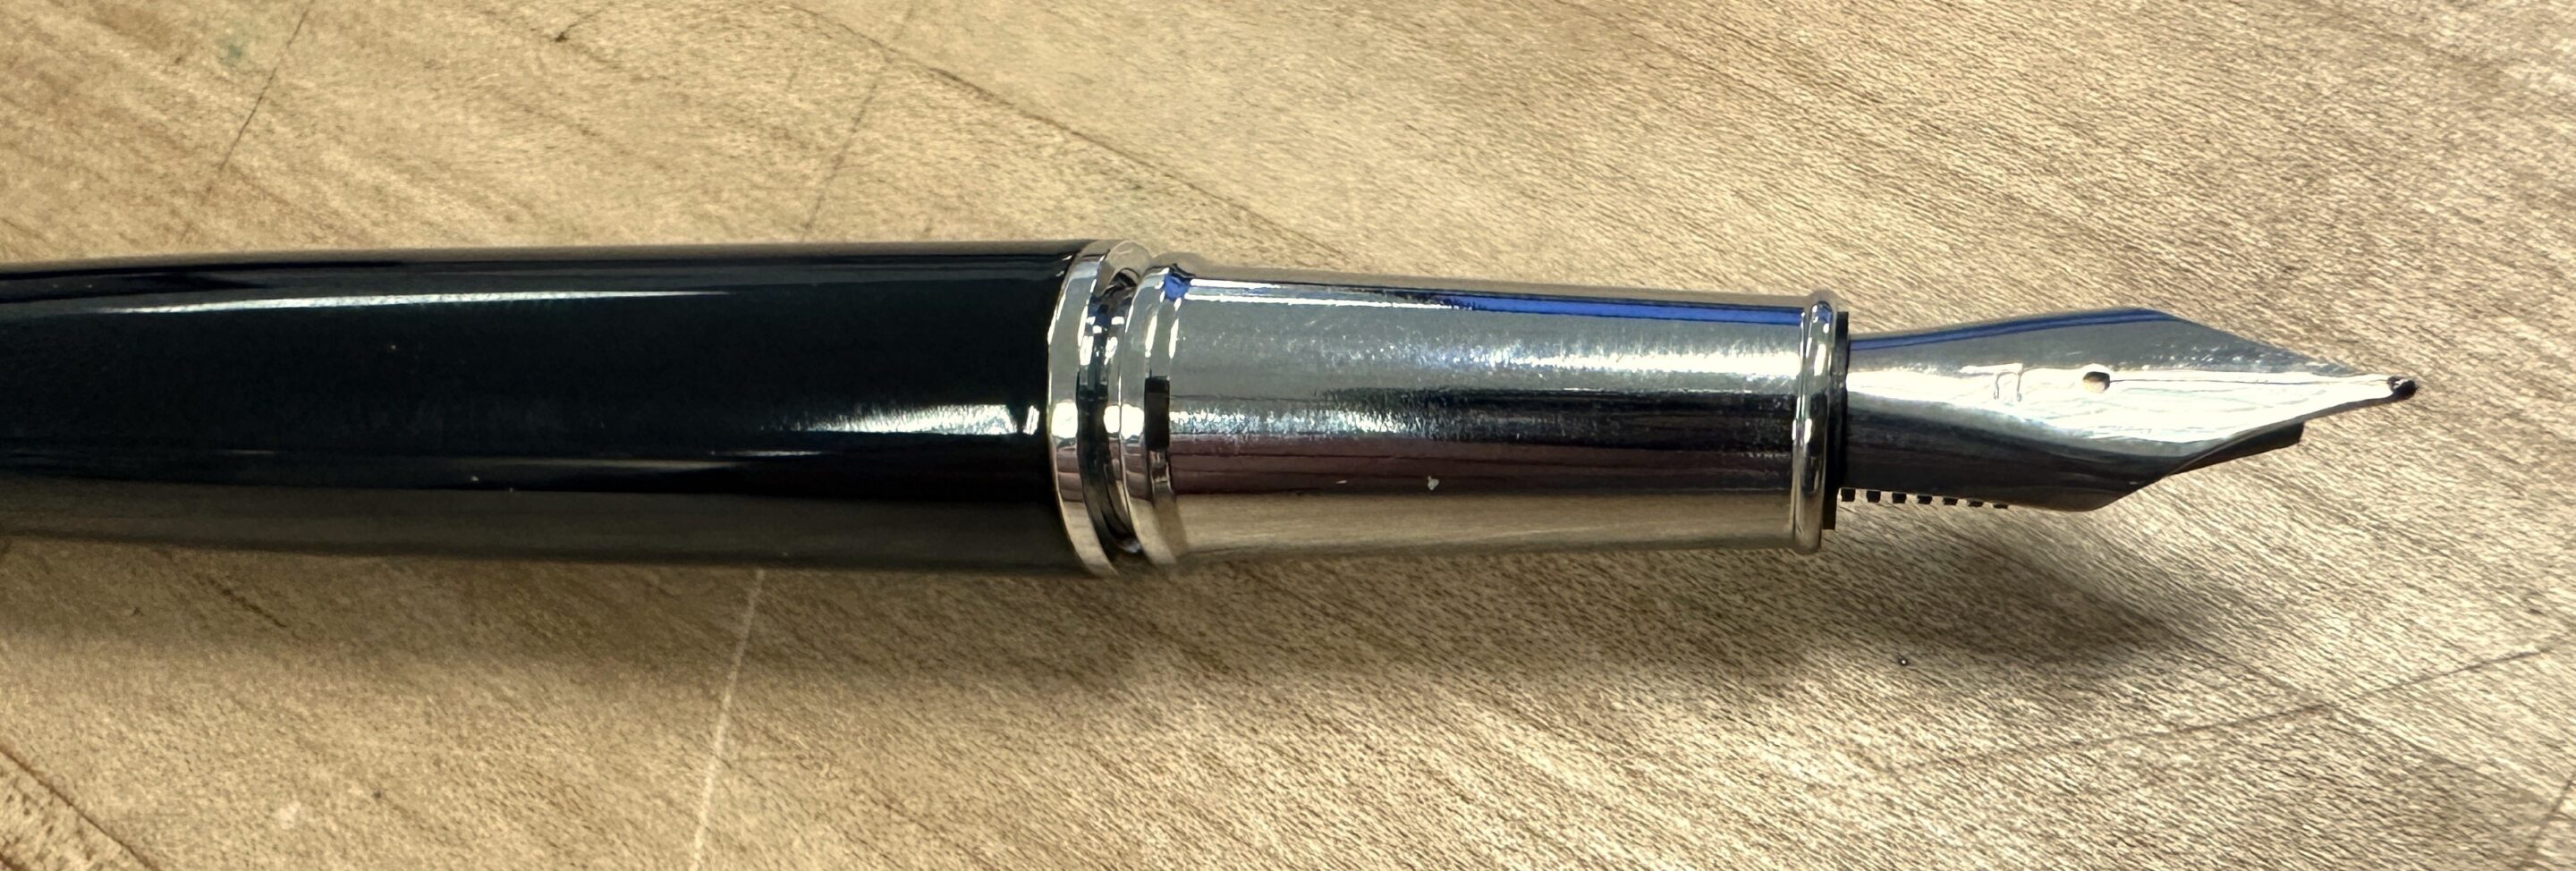 A quill pen